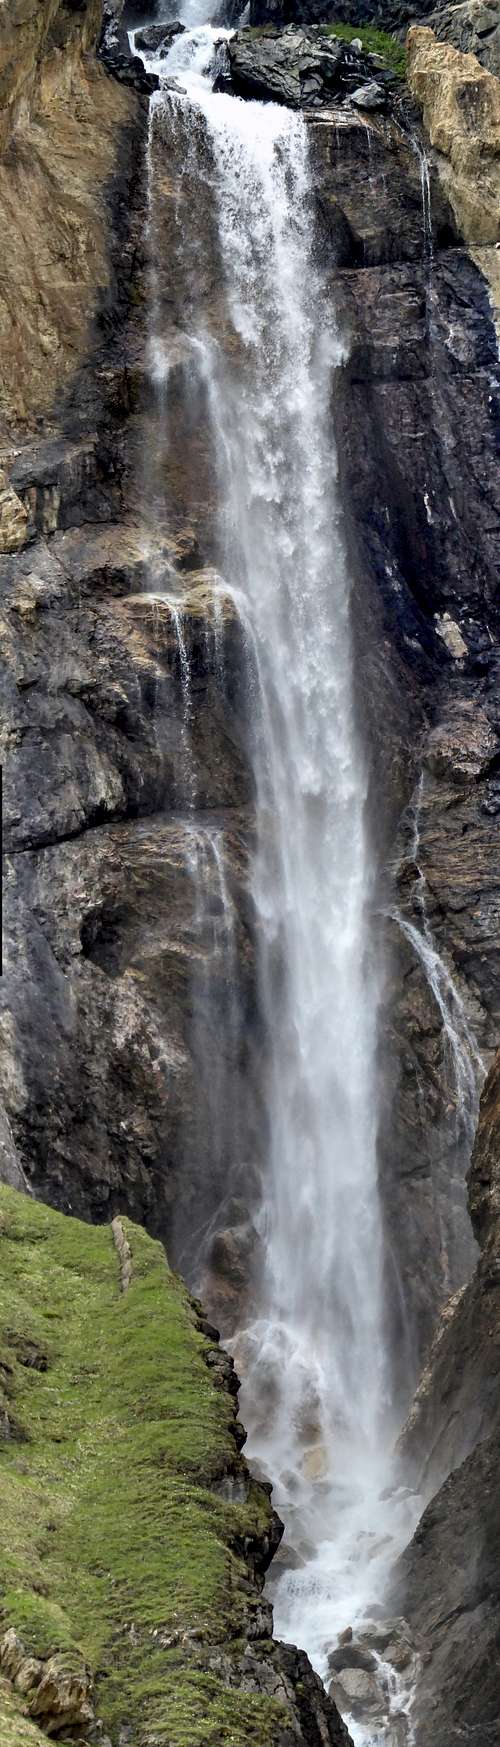 Goletta Waterfall in Rhêmes valley